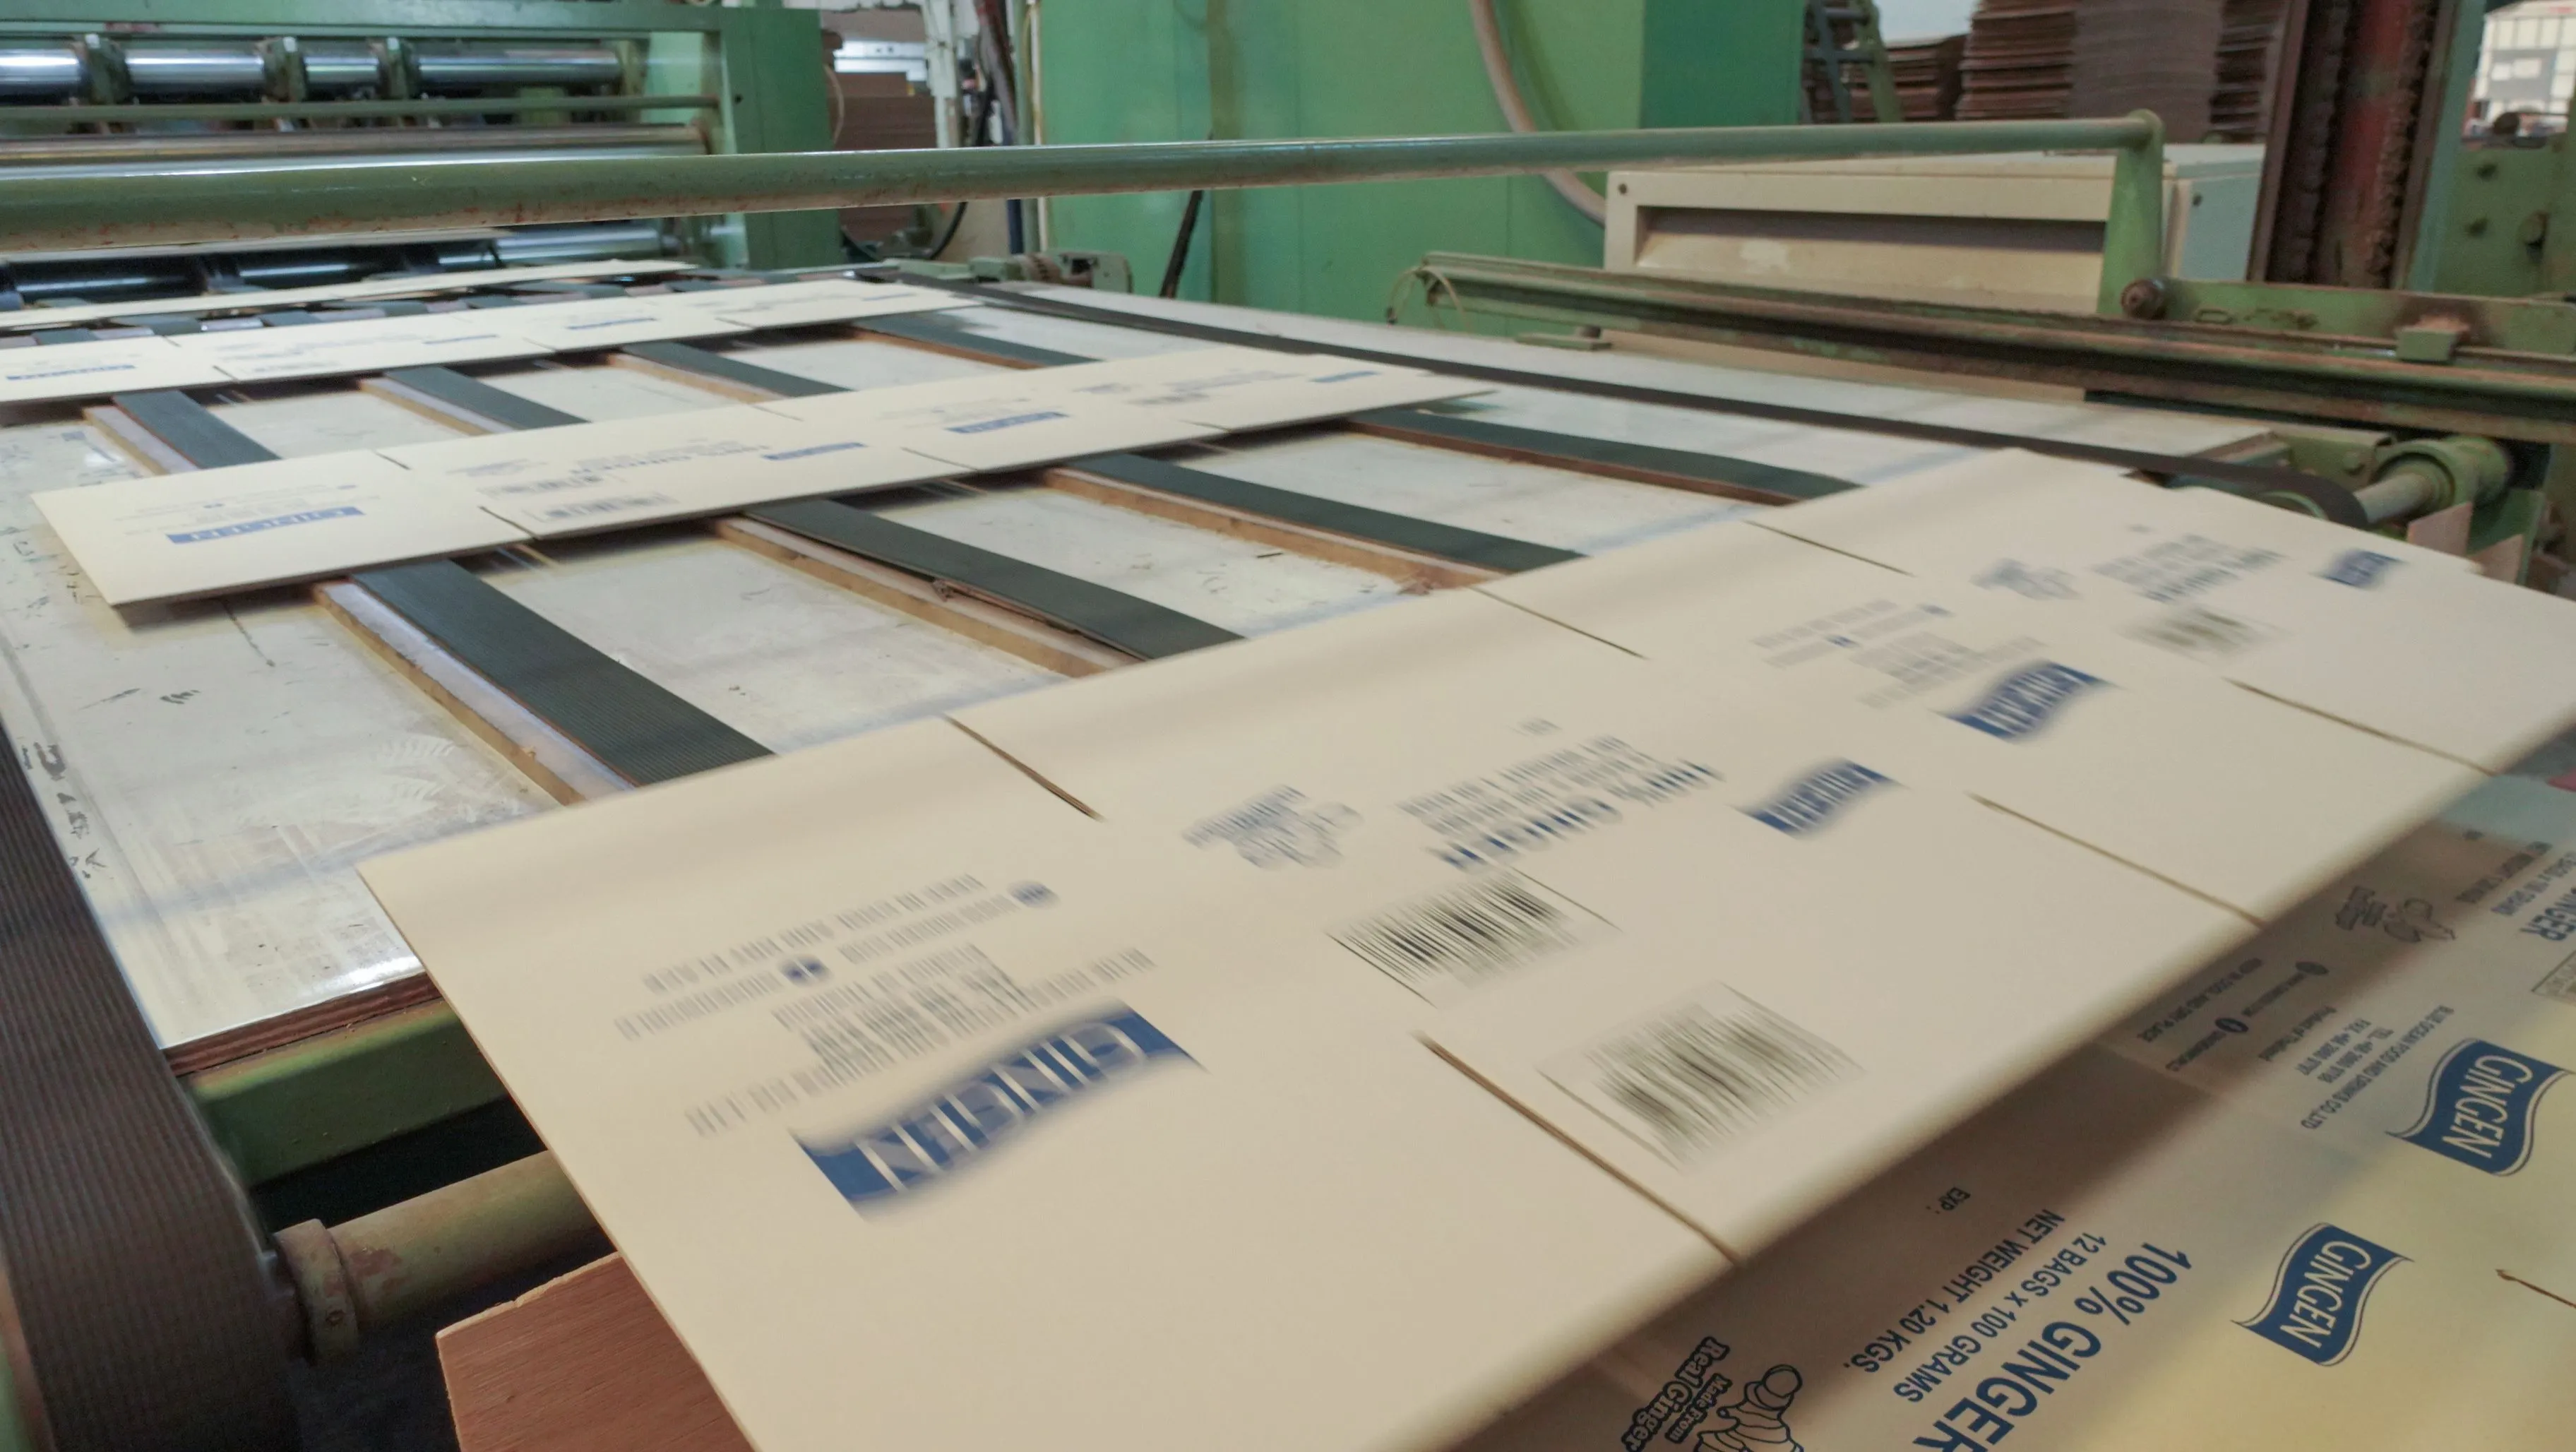 ยูนิเวอร์แซล แพคเกจจิ้ง - โรงงานผลิตกล่องกระดาษลูกฟูก กล่องฝาเกย กล่องไดคัท ทุกรูปแบบ